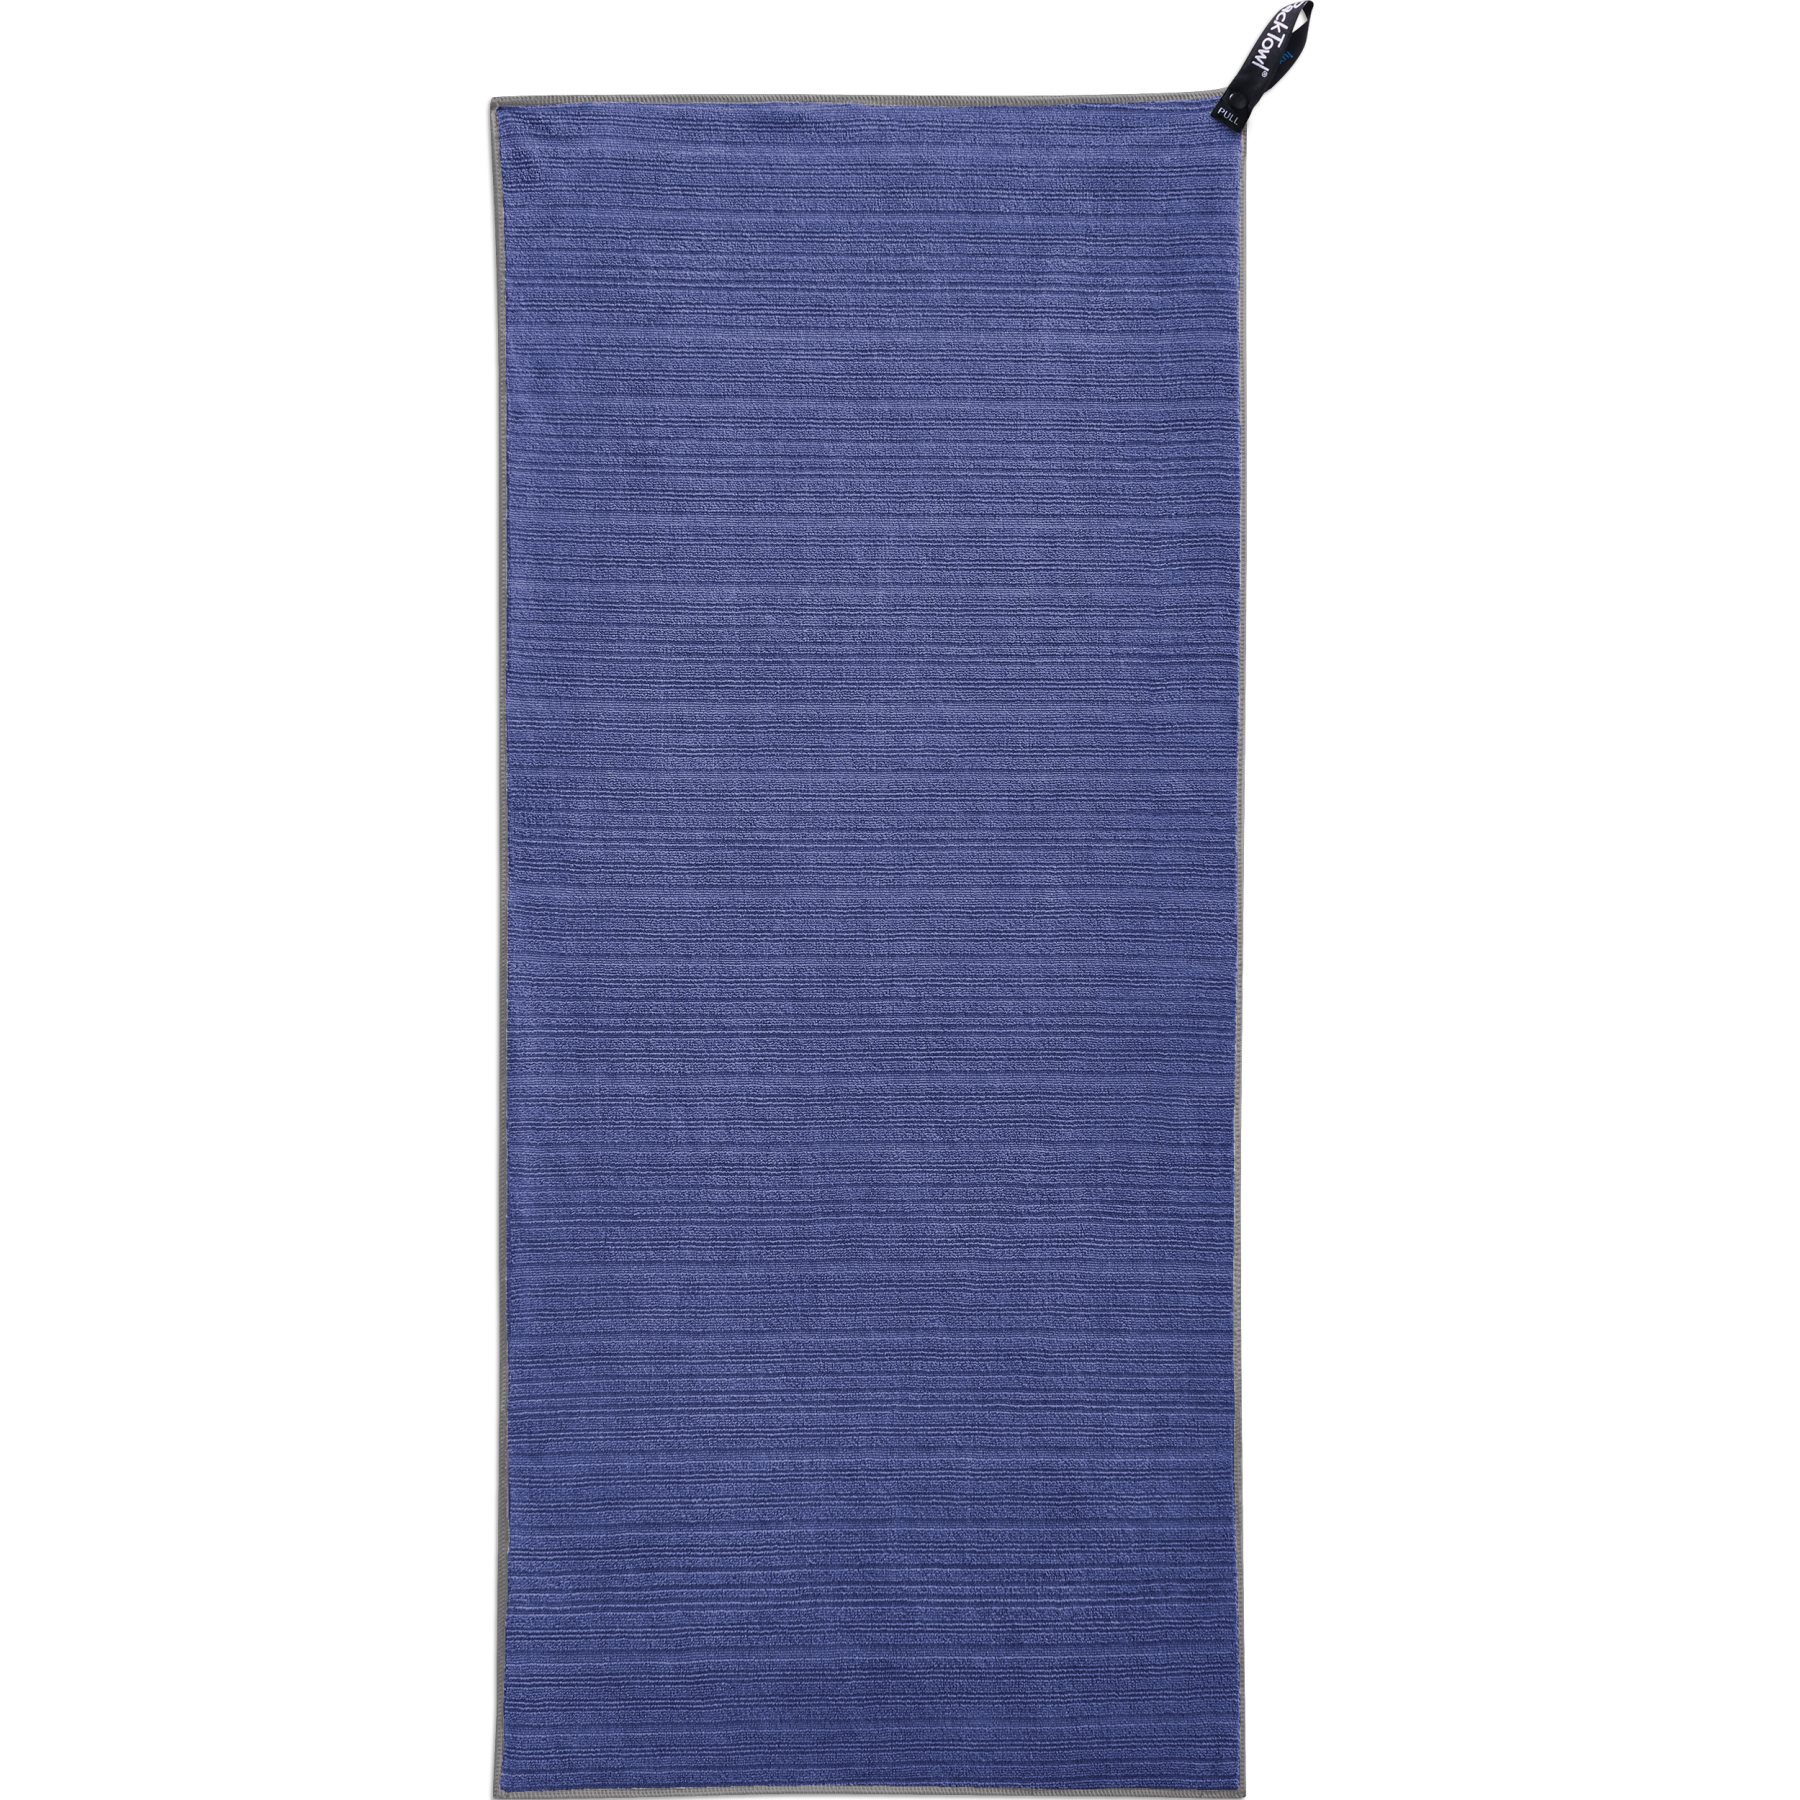 Productfoto van PackTowl Luxe Hand Handdoek - paars